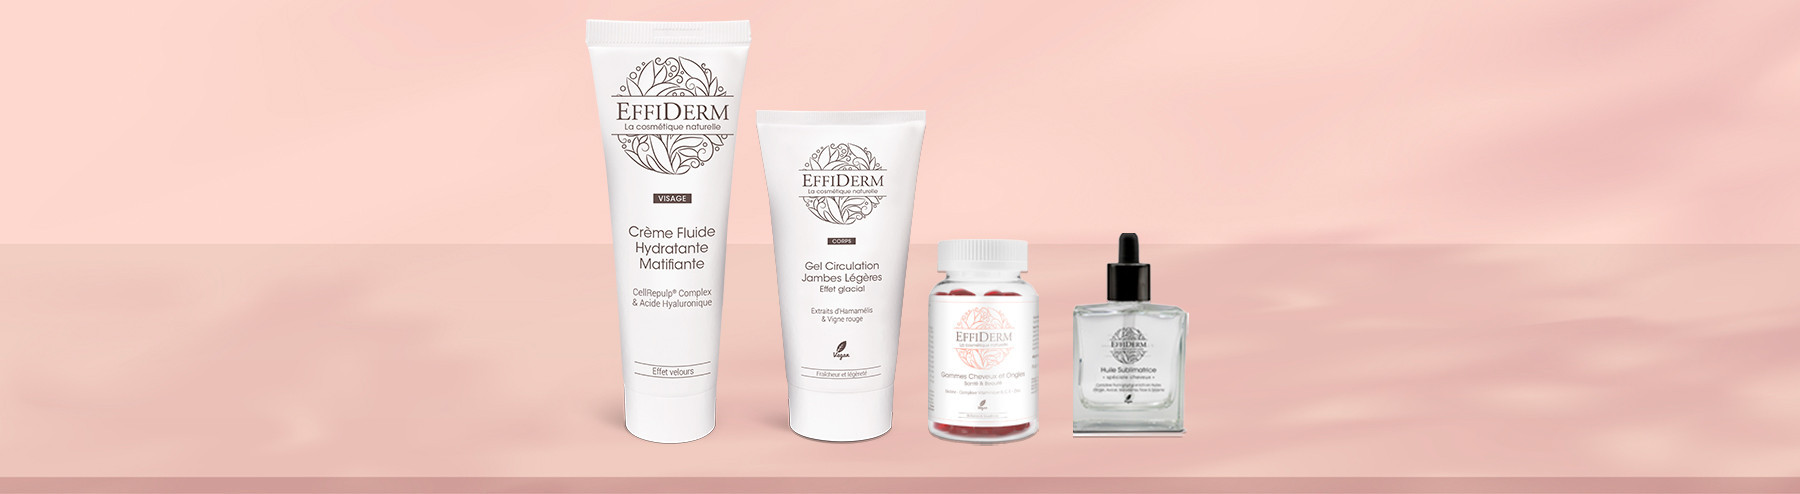 Effiderm : cosmétiques visage et corps naturels Effiderm